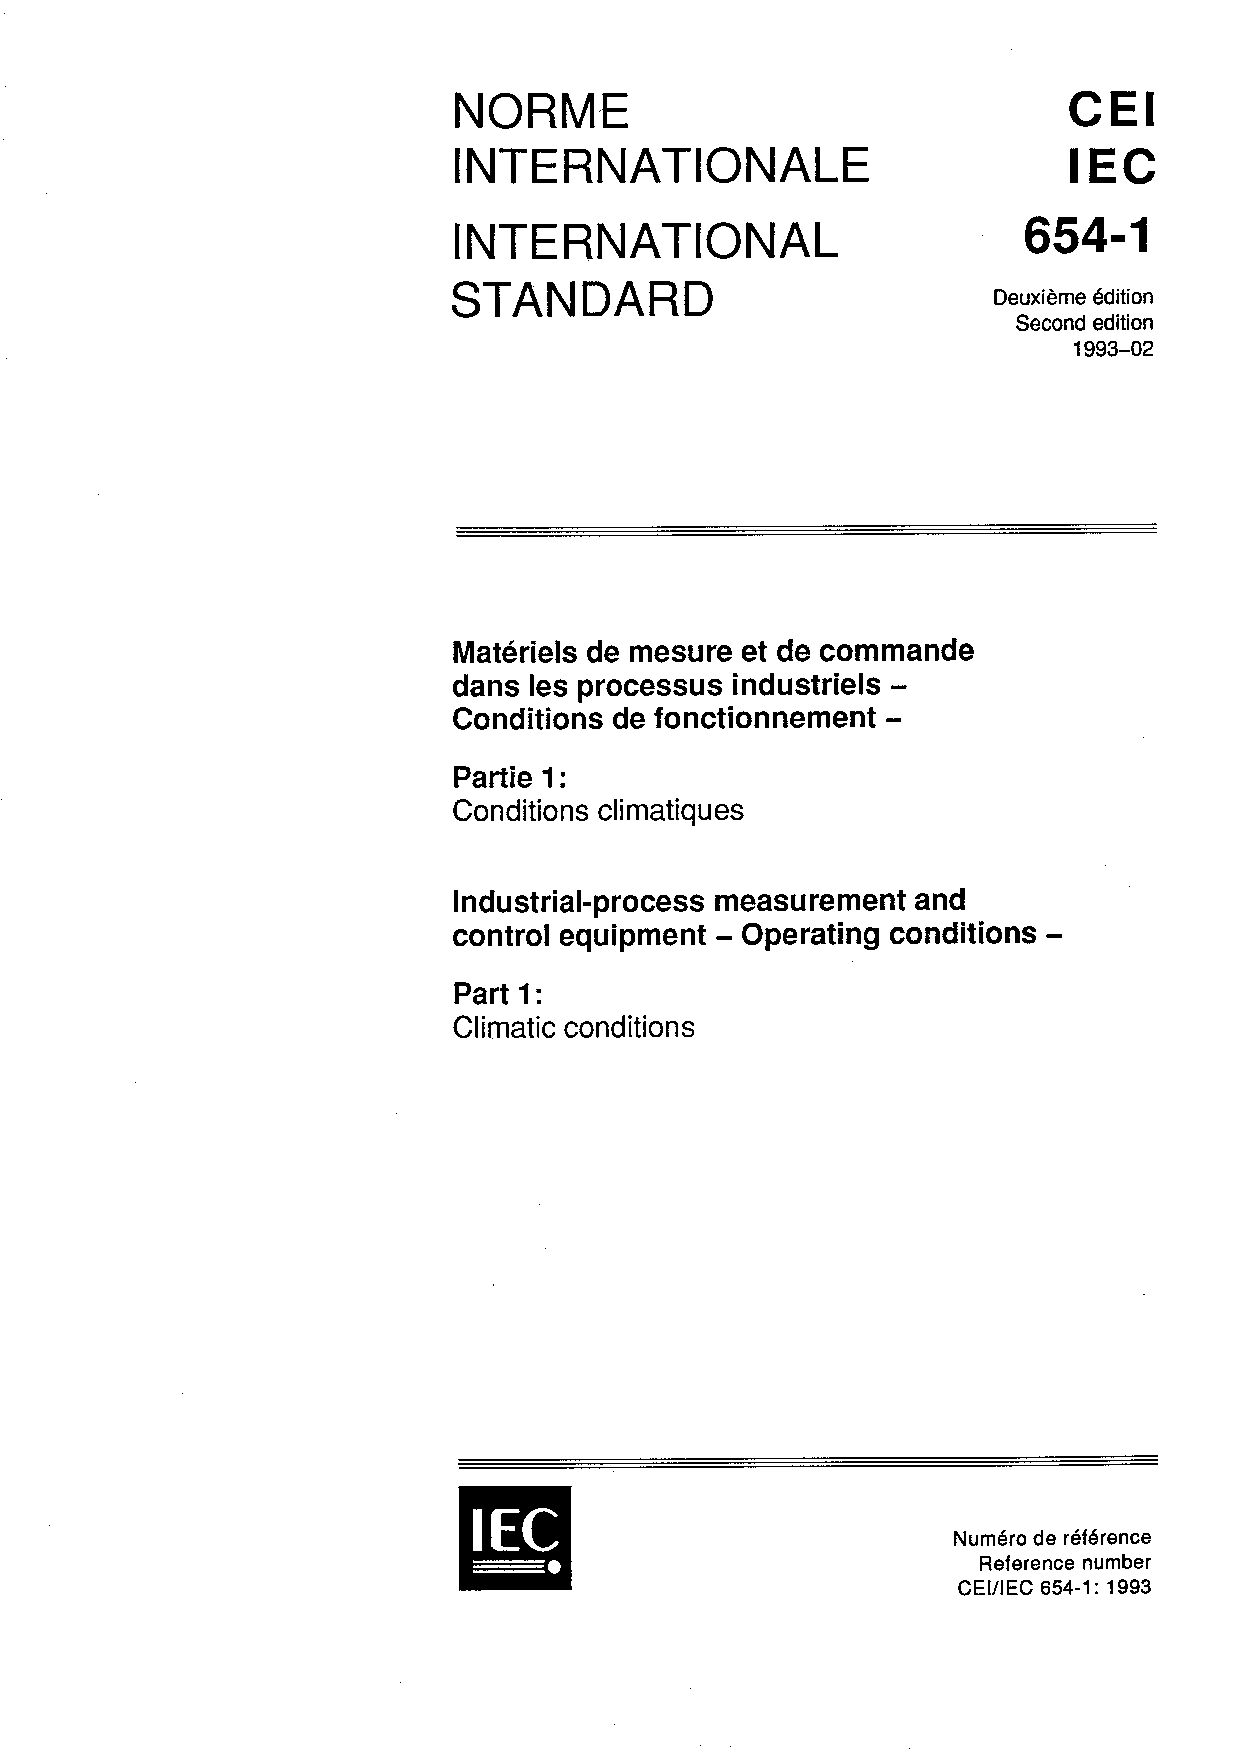 IEC 60654-1:1993